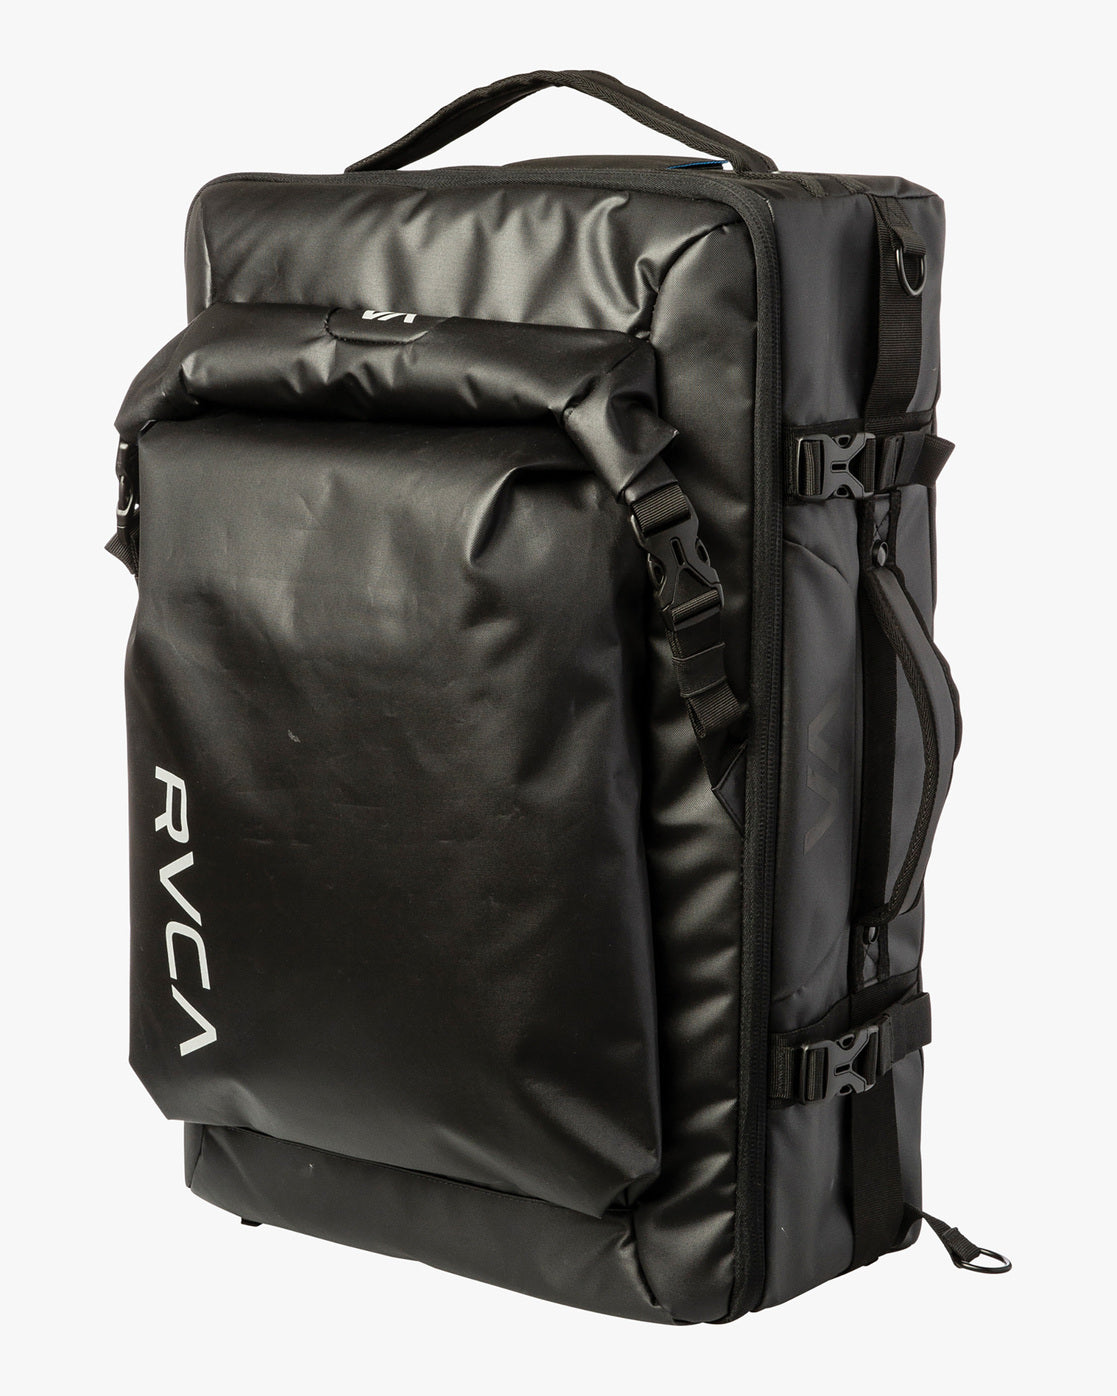 Zak Noyle Camera Gear Duffle Bag - Black – RVCA.com